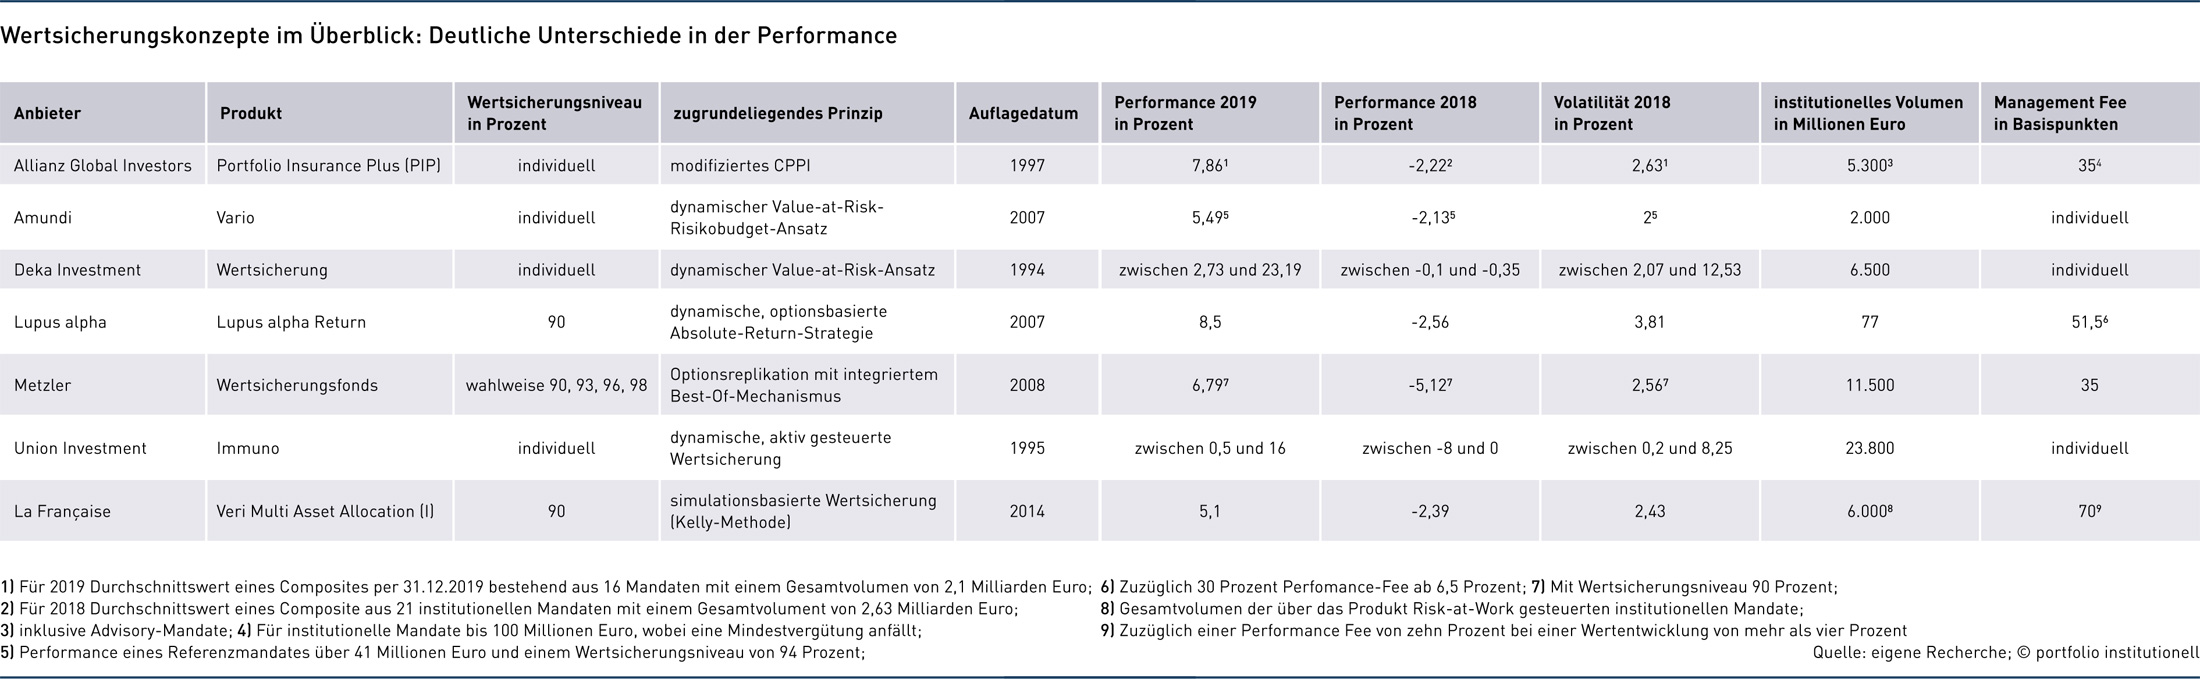 Grafik: Wertsicherungskonzepte im Überblick: Deutliche Unterschiede in der Performance